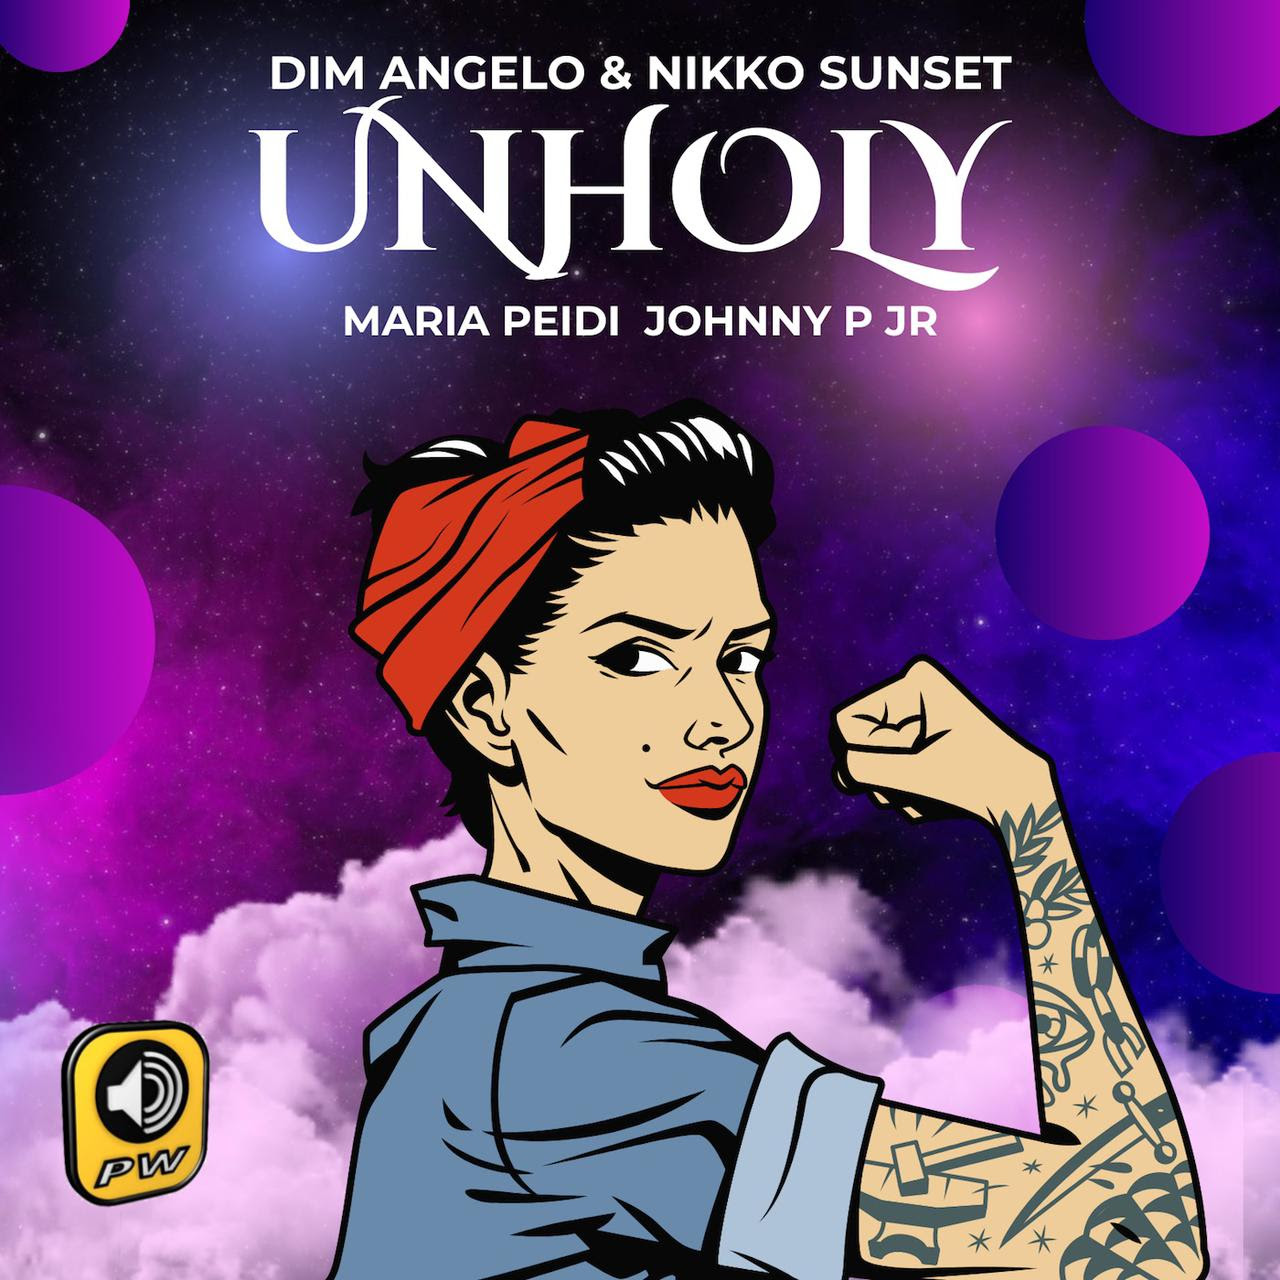 Dim Angelo & Nikko Sunset΄:”Unholy” feat. Maria Peidi & Johnny P Jr